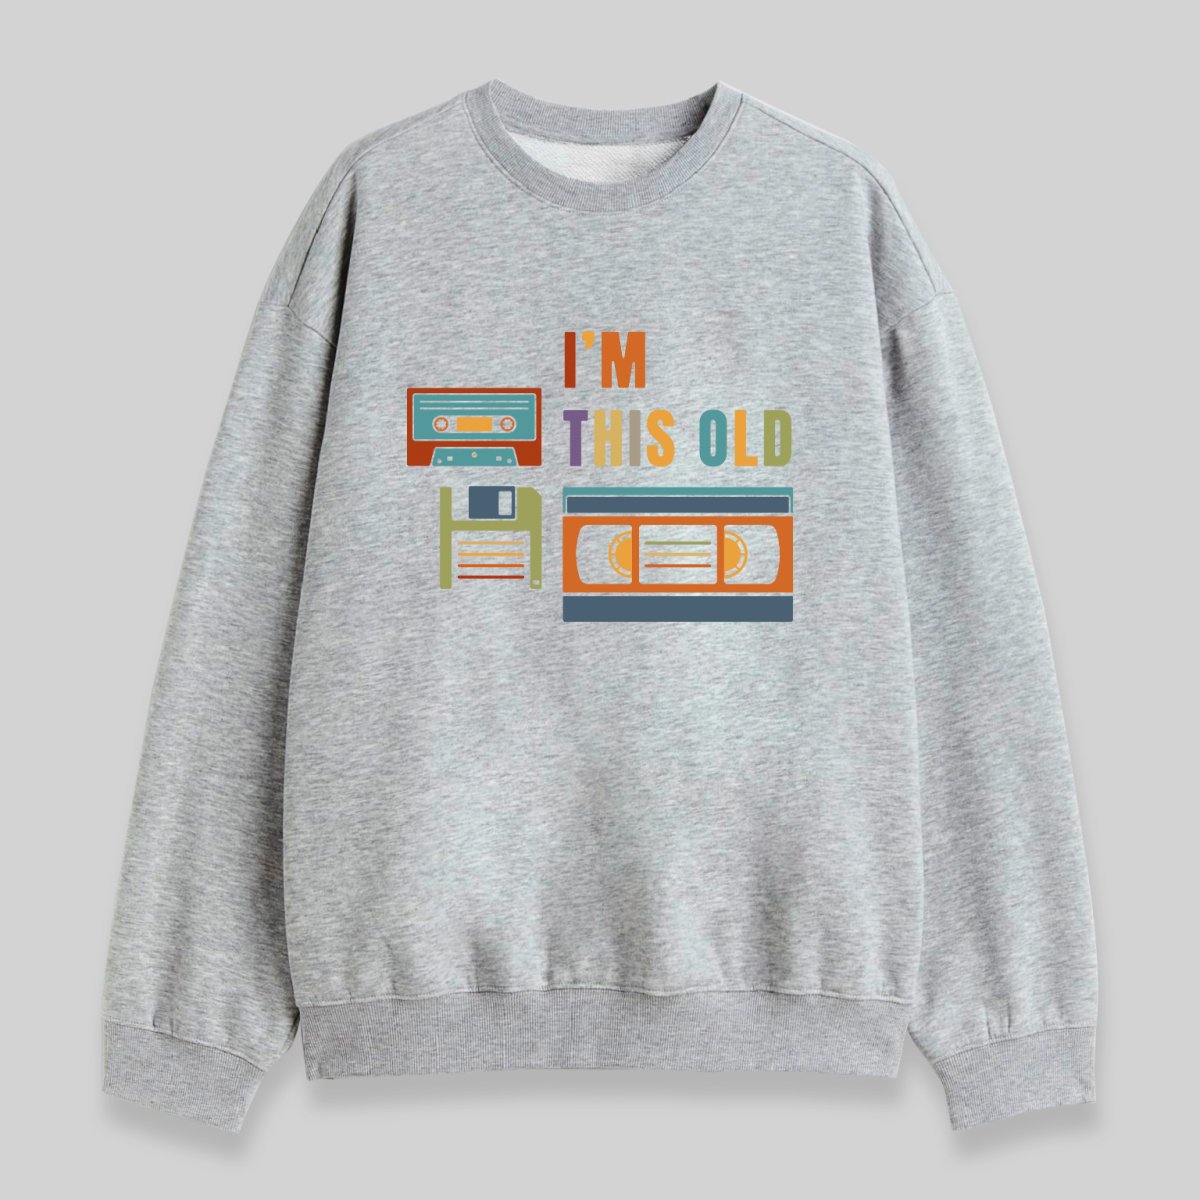 Im This Old Sweatshirt - Geeksoutfit